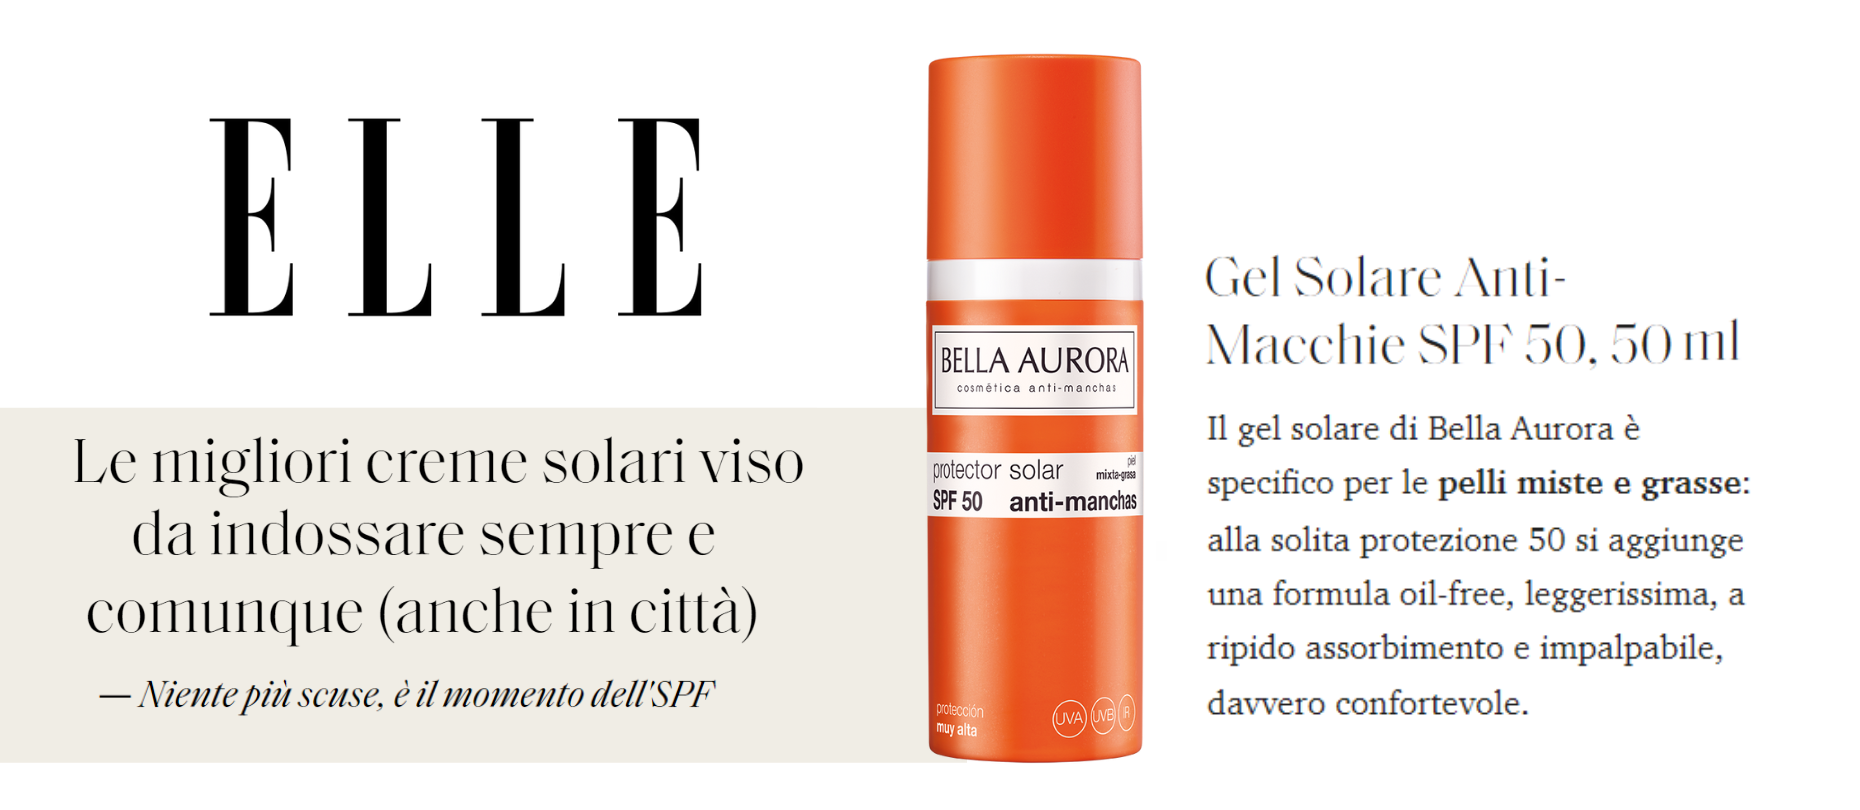 Elle Italia elige los protectores solares Bella Aurora ¡para todo el año!